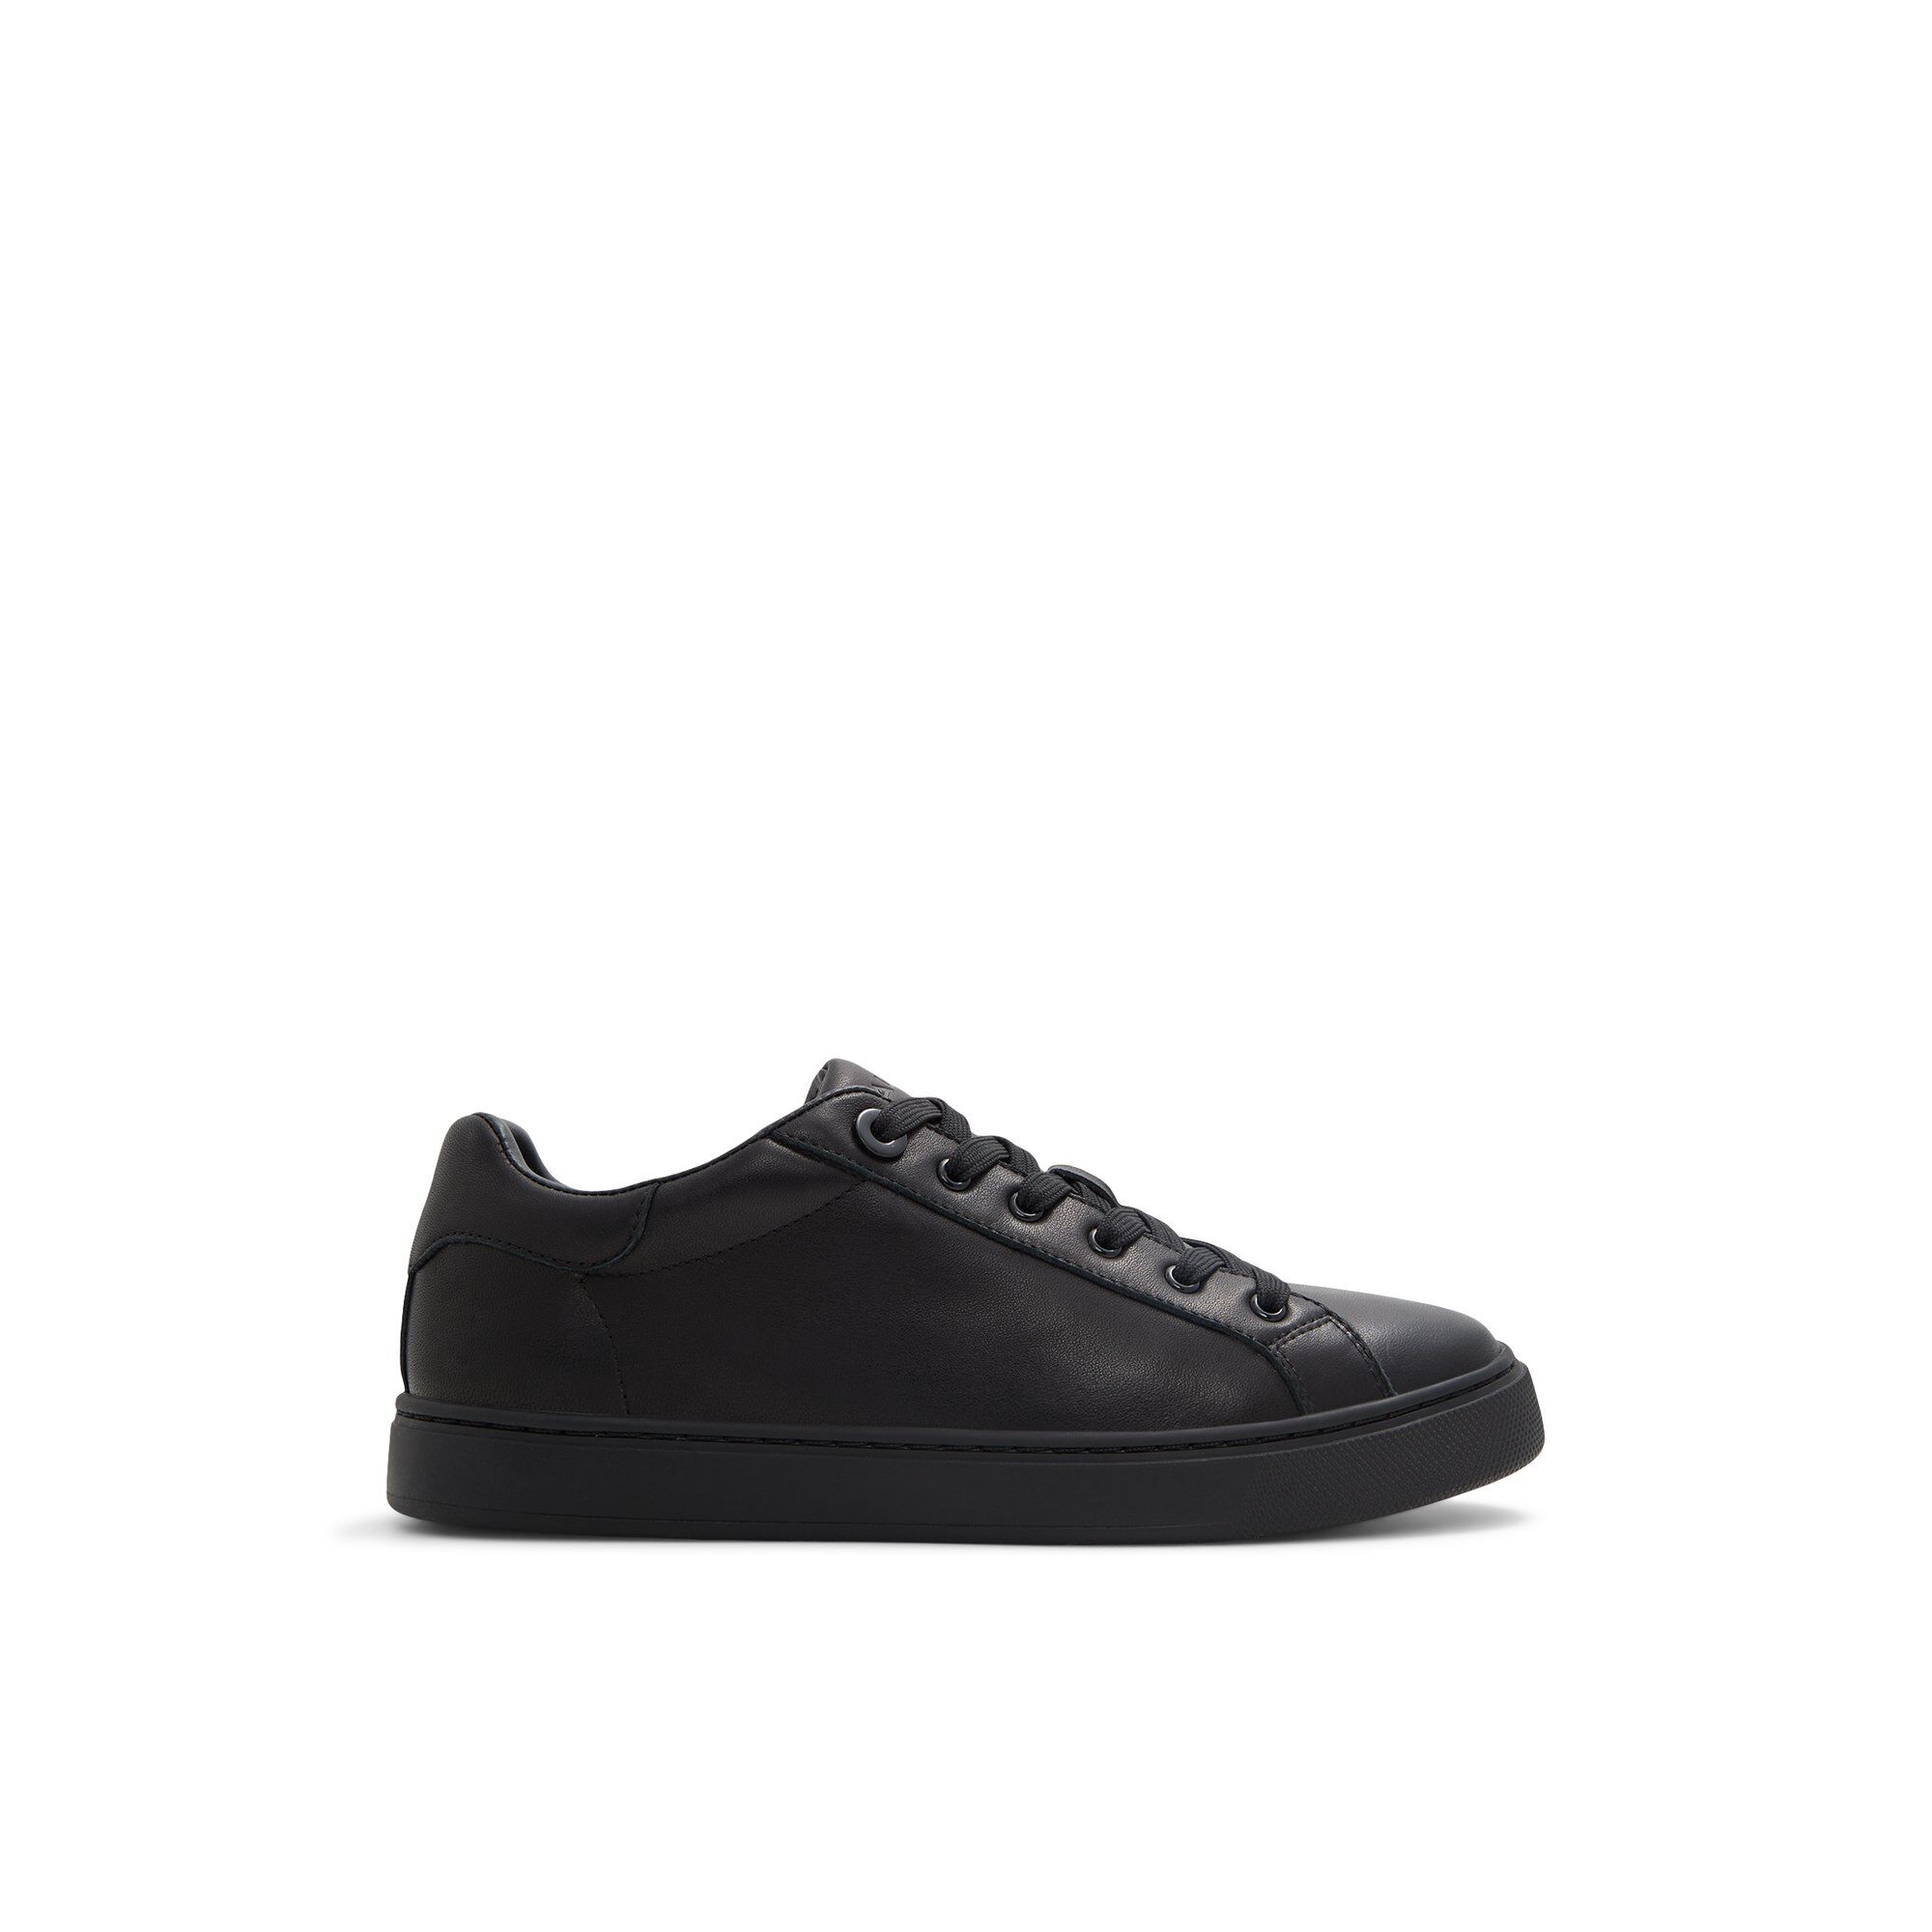 ALDO Woolly - Women's Low Top Sneaker Sneakers - Black, Size 6